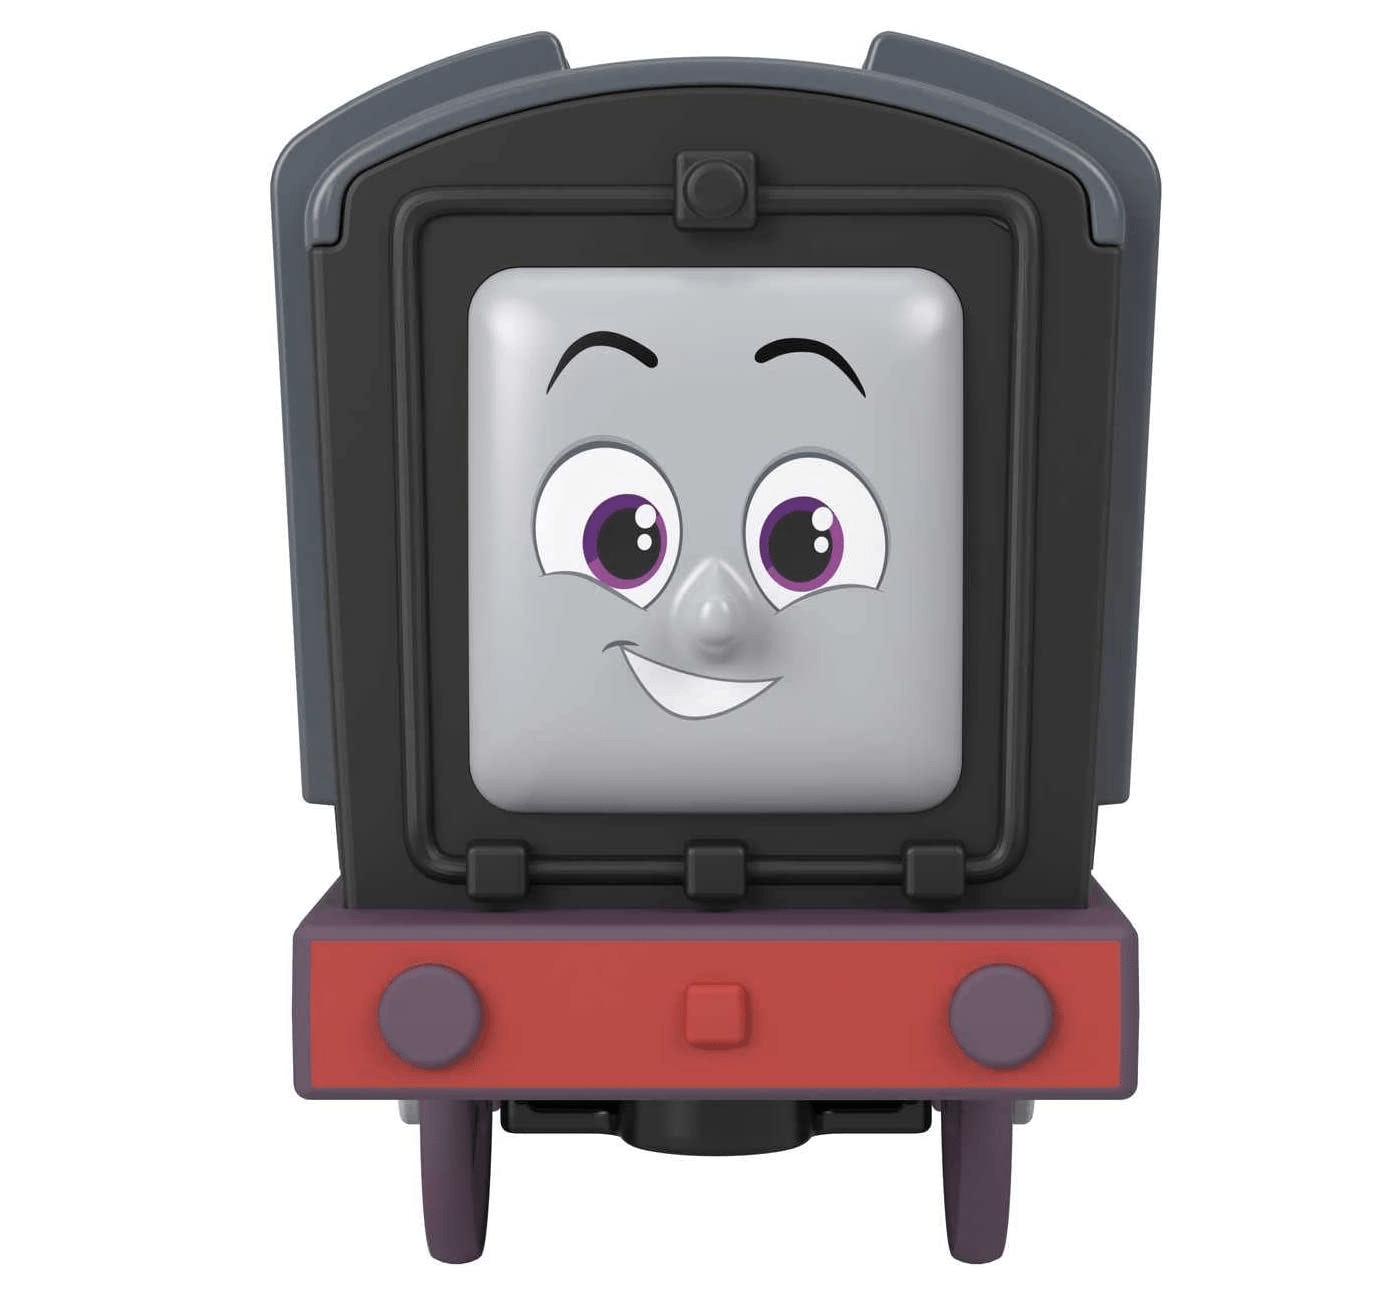 Trenzinho Motorizado Thomas Agente Secreto Thomas e Seus Amigos  Fisher-Price Mattel - Fátima Criança